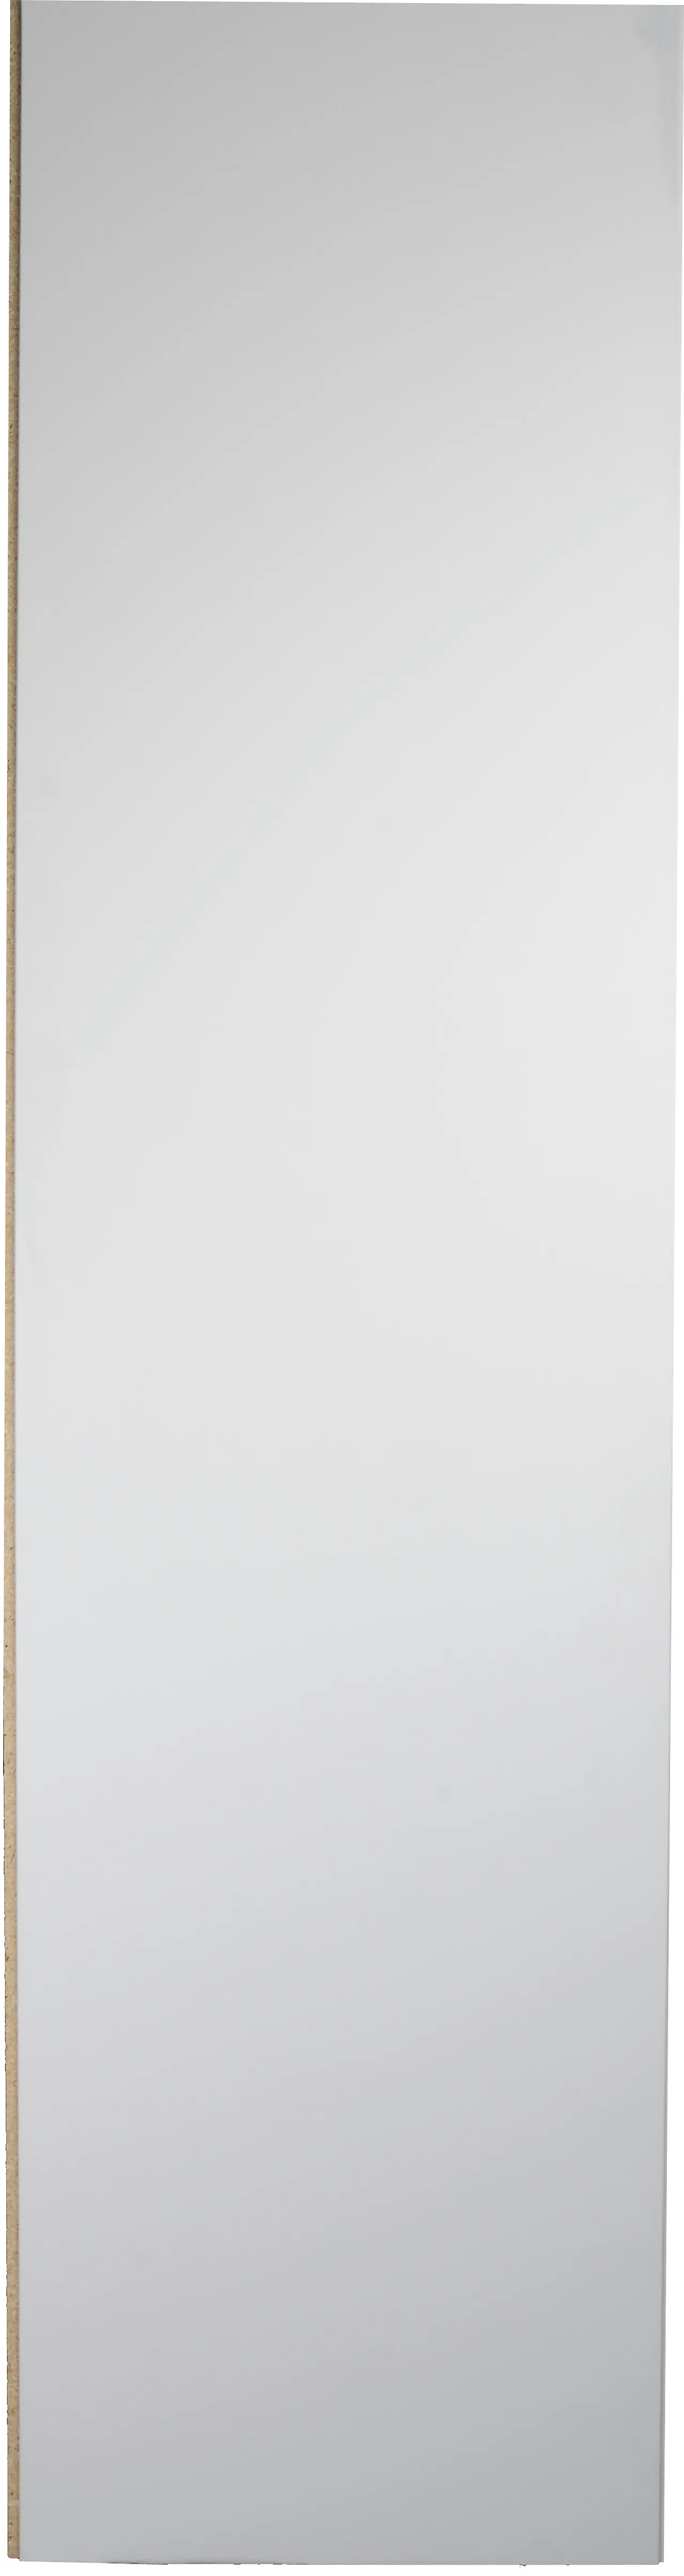 Sponplate vegg 12x620x2390 mm foliert hvit not og fjær 2 sider null - null - 2 - Miniatyr